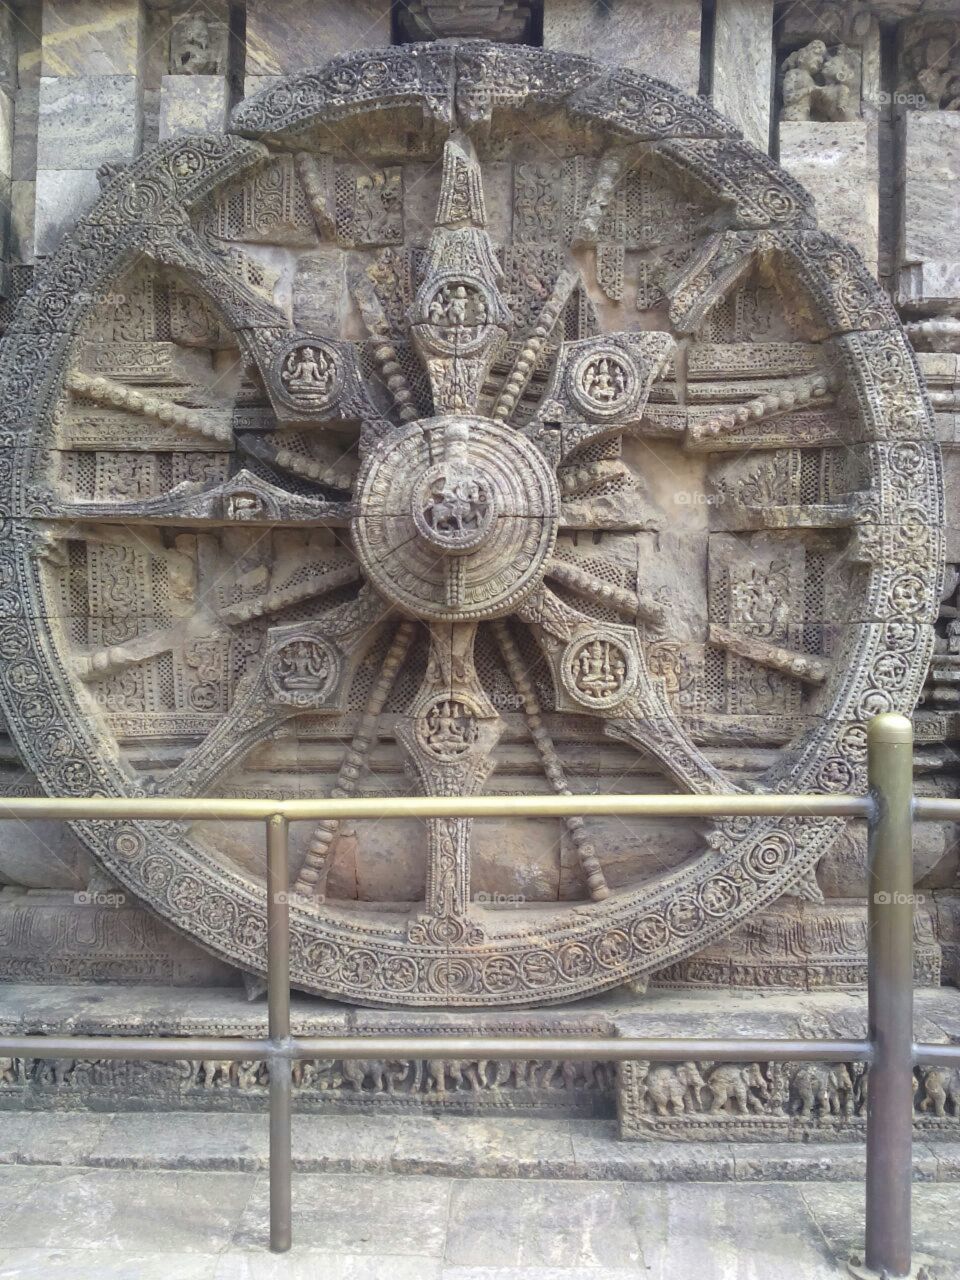 Wheel of konark